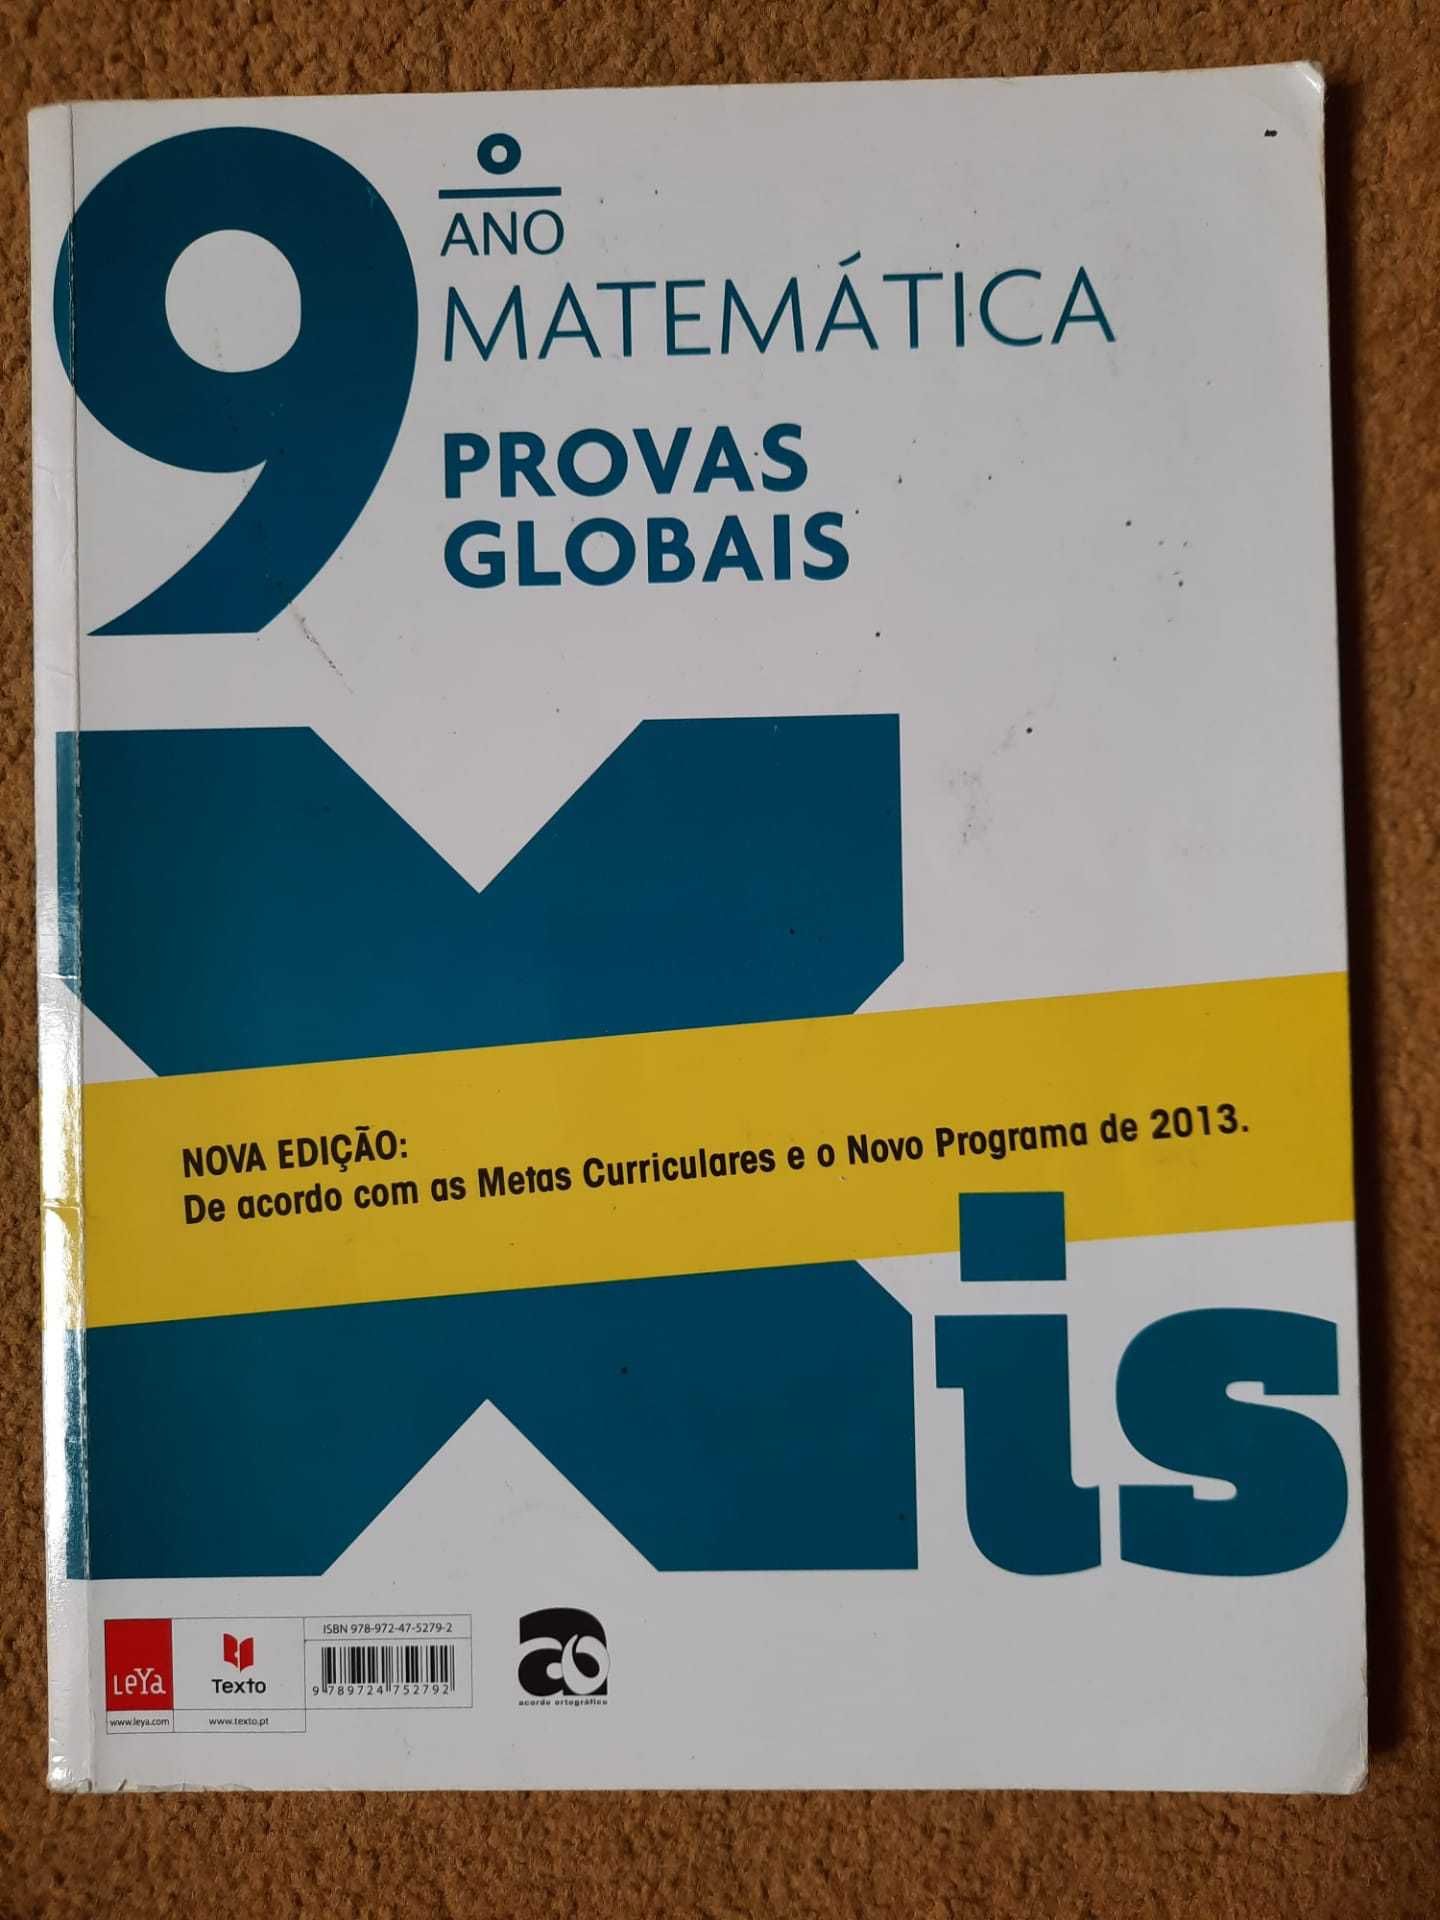 Xis - Caderno de Atividades Matemática 9º ano